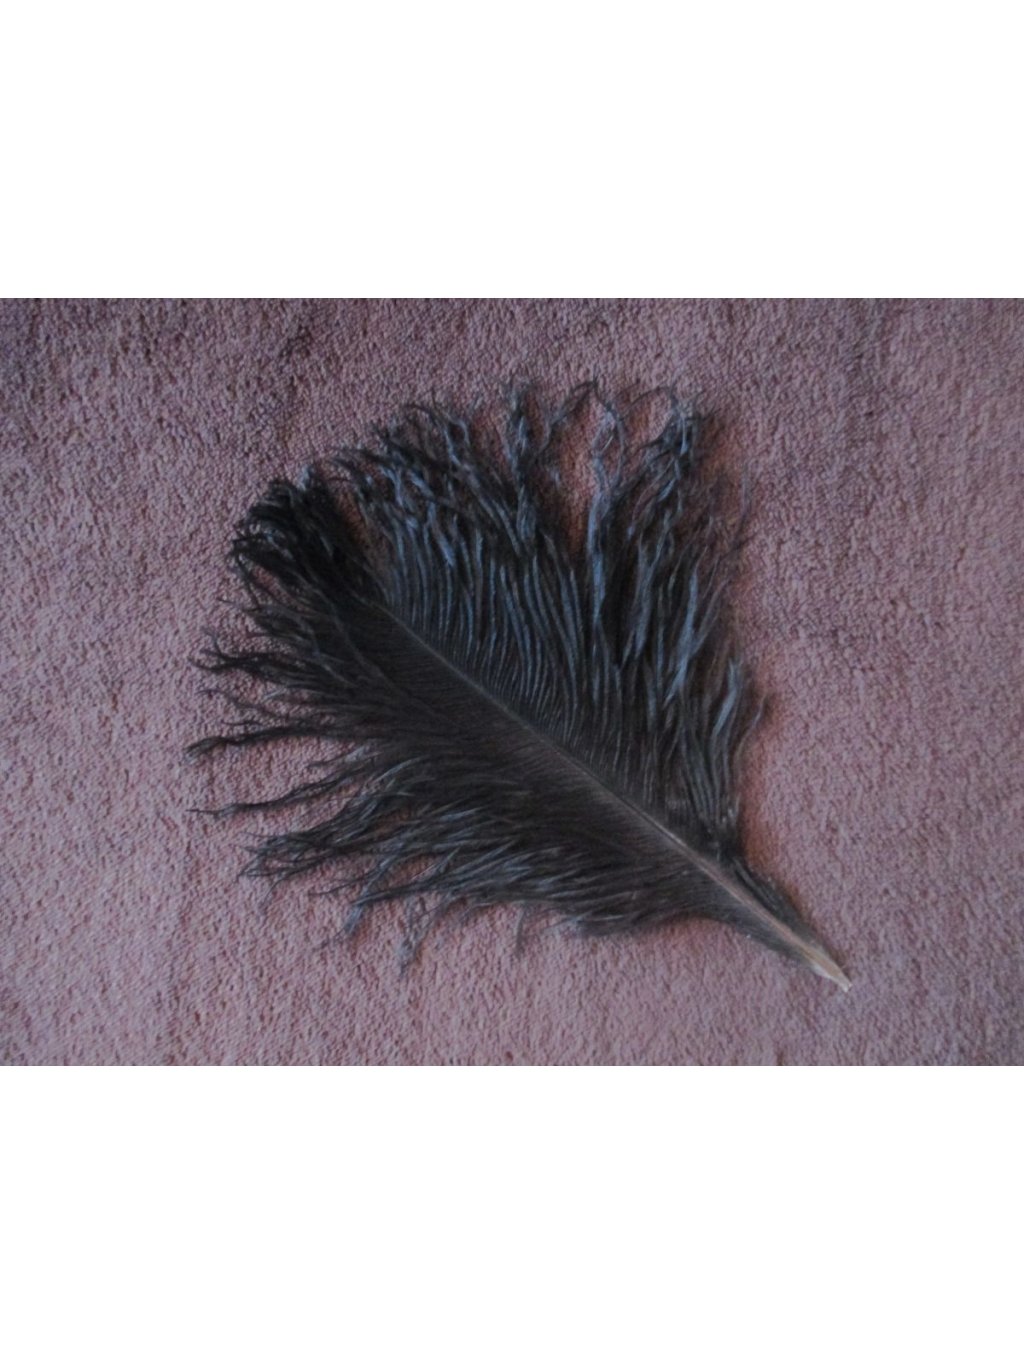 Pštrosí peří černé 12 - 20 cm